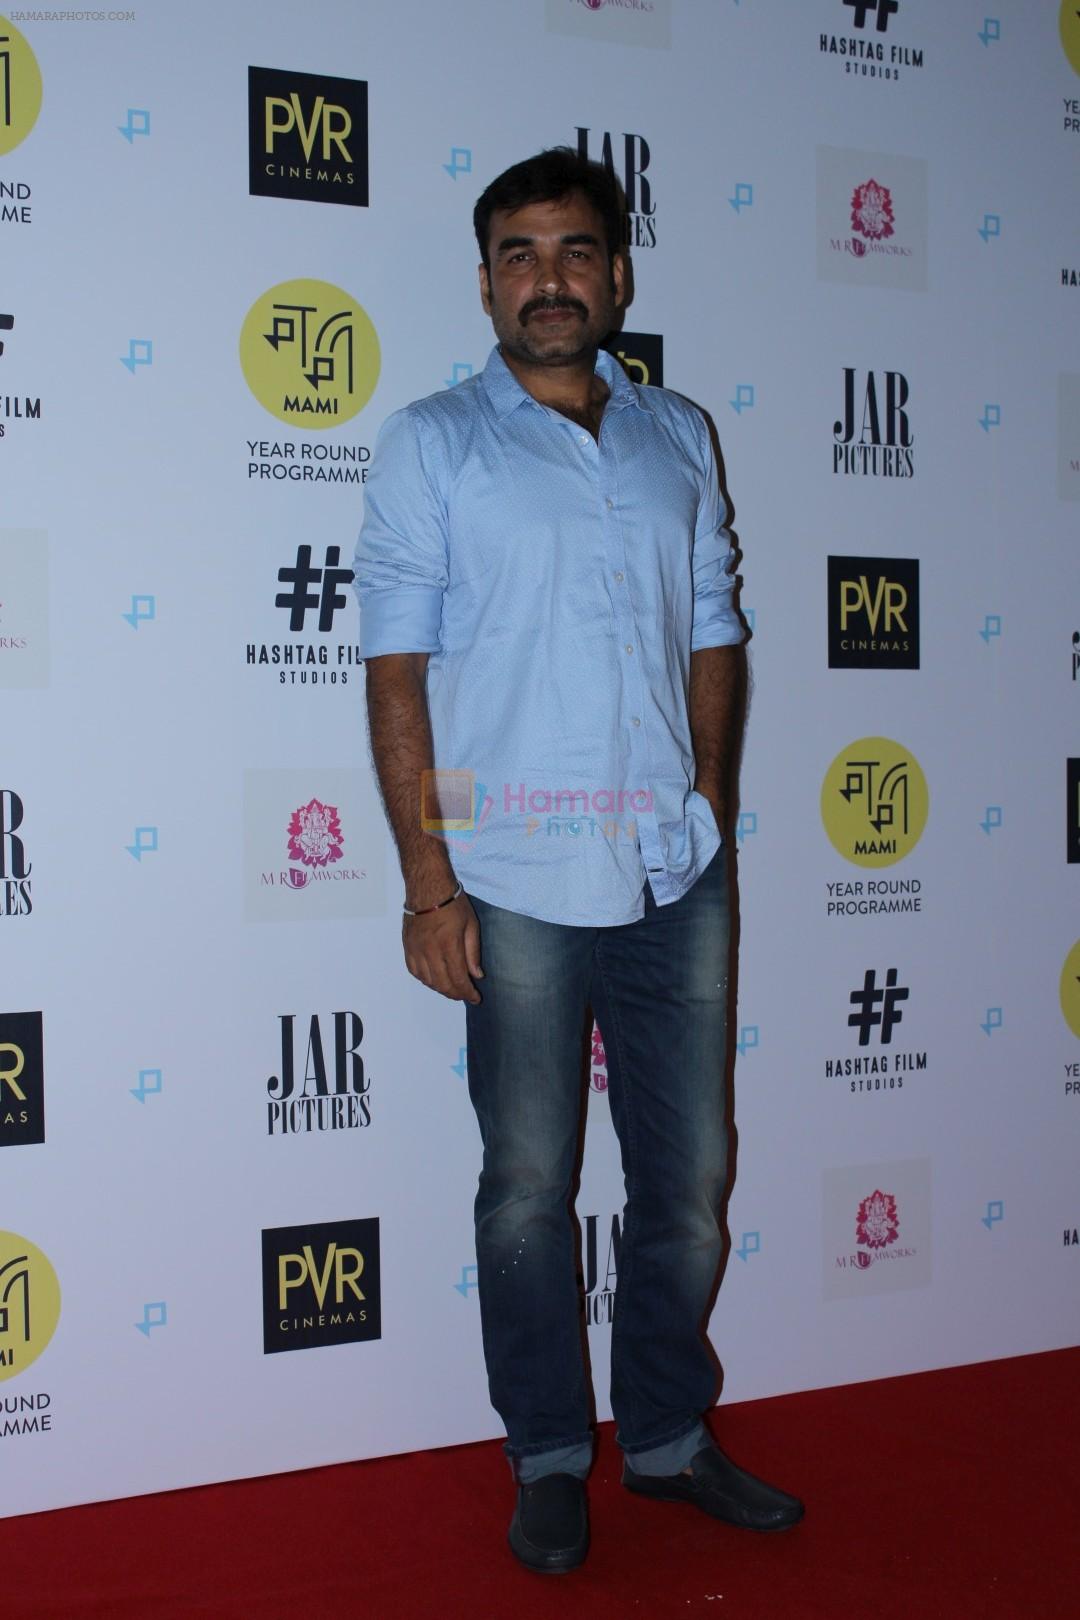 Pankaj Tripathy at Gurgaon Film Premiere Hosted By MAMI Film Club on 1st Aug 2017